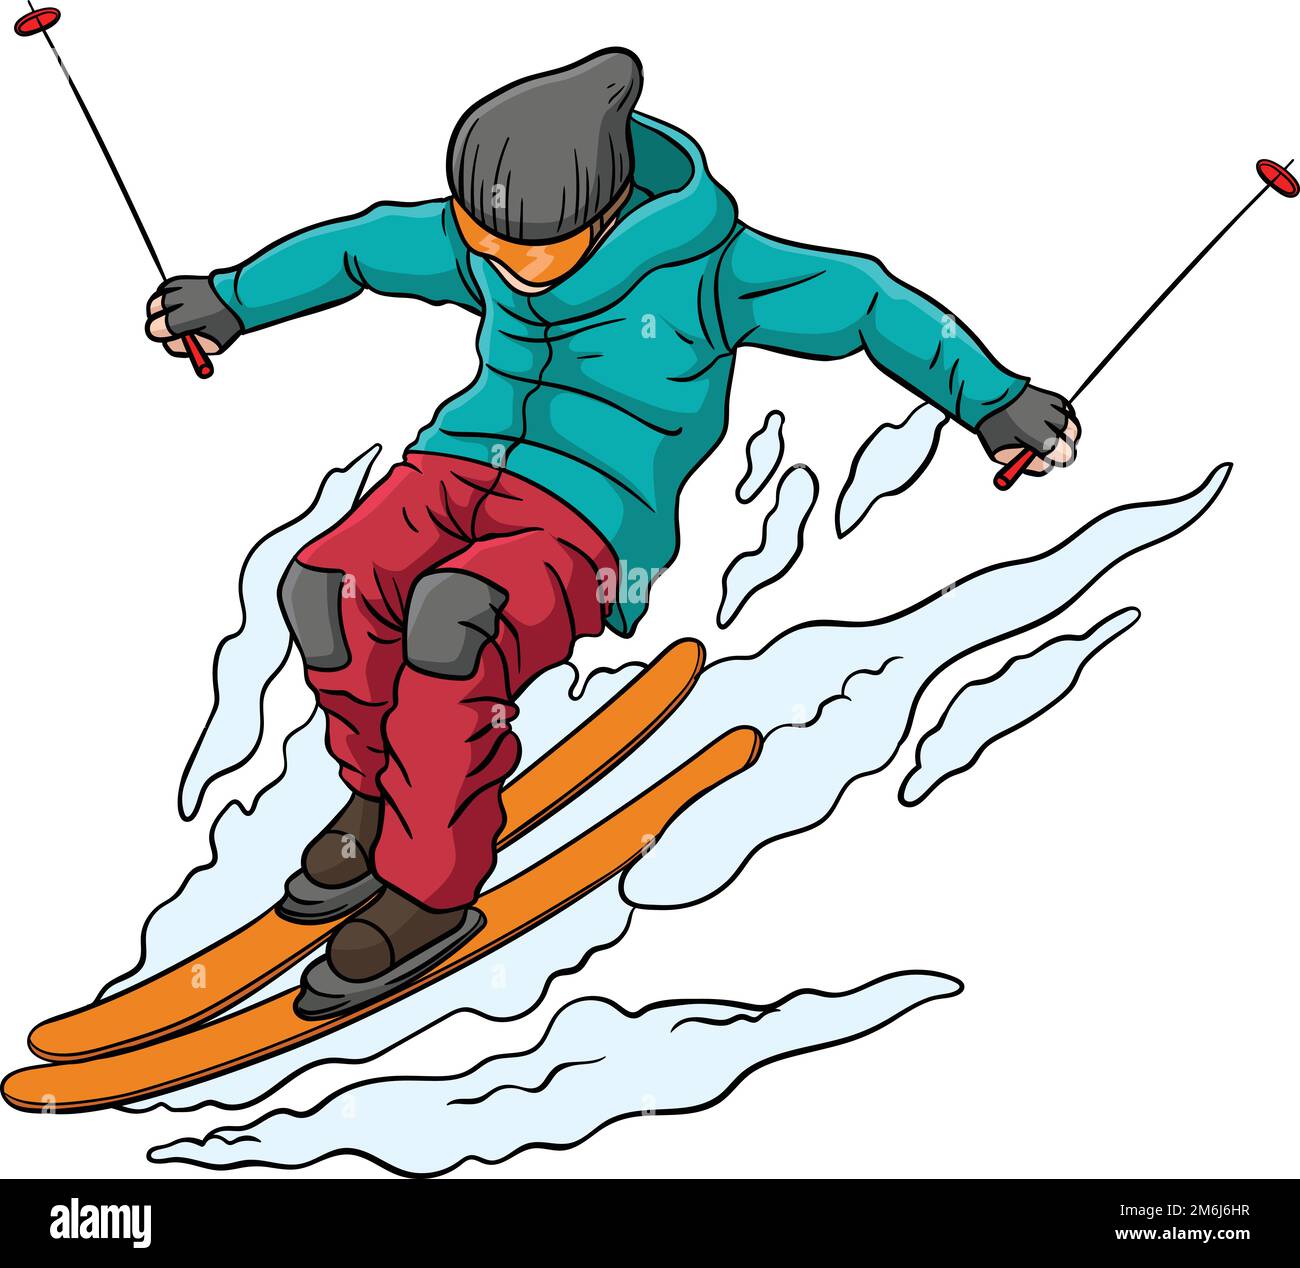 Dessin d'une falaise de couleur pour le ski alpin Illustration de Vecteur